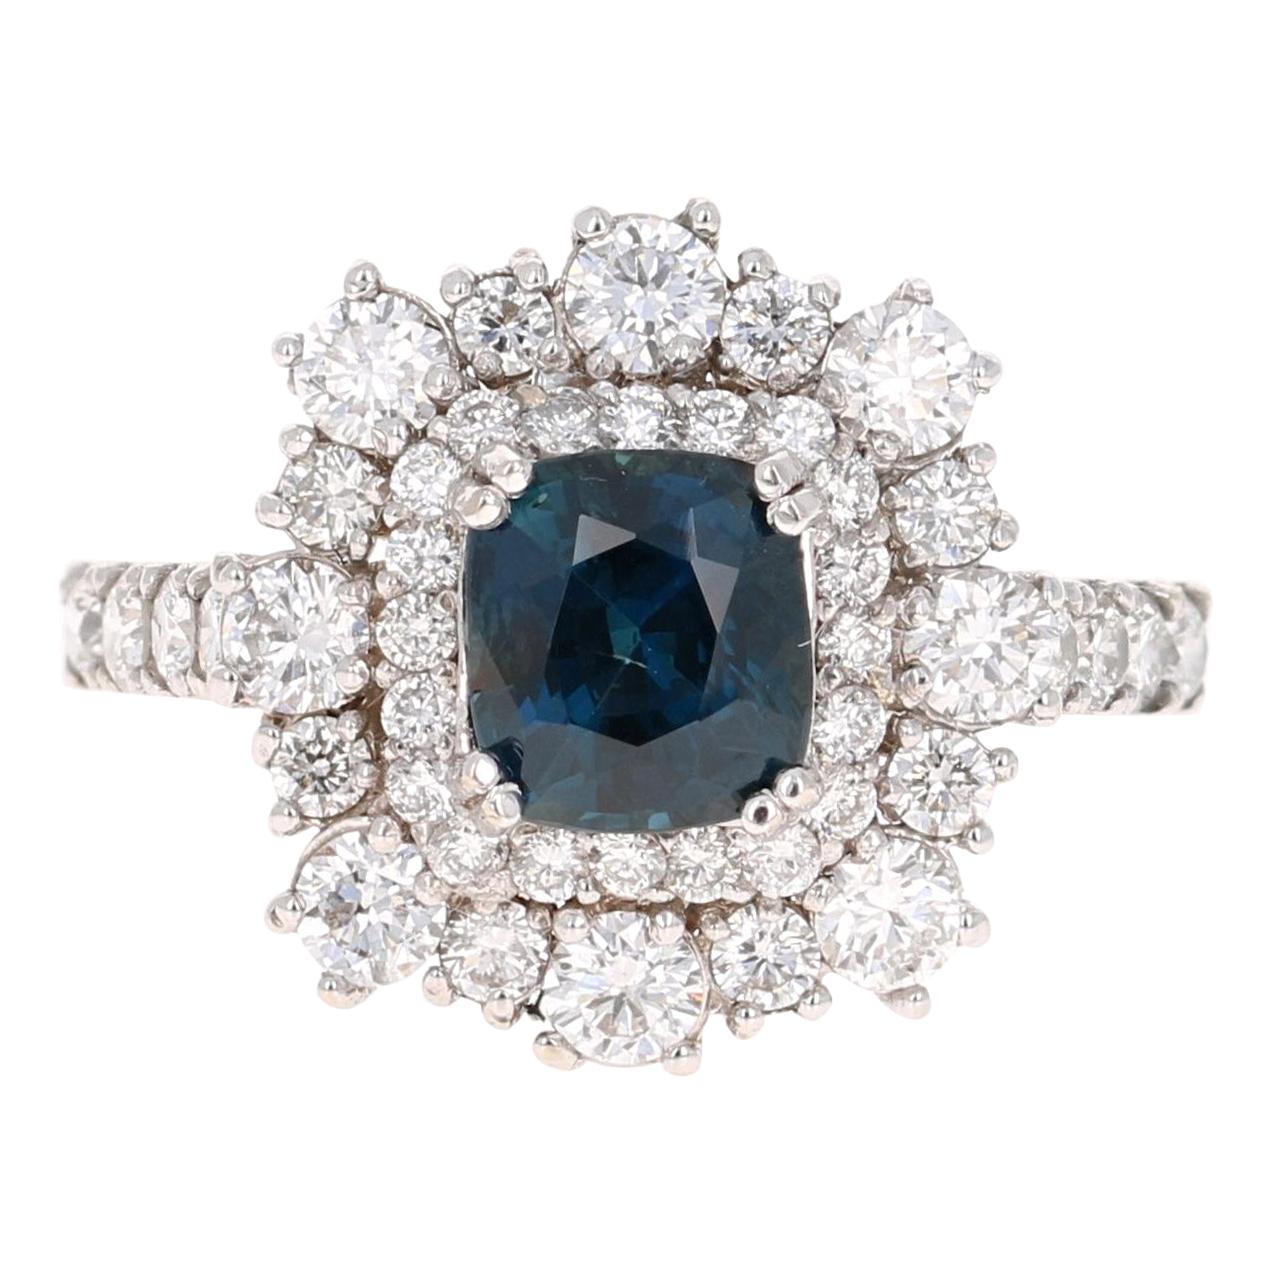 2.93 Carat GIA Certified Sapphire Diamond 18 Karat White Gold Engagement Ring